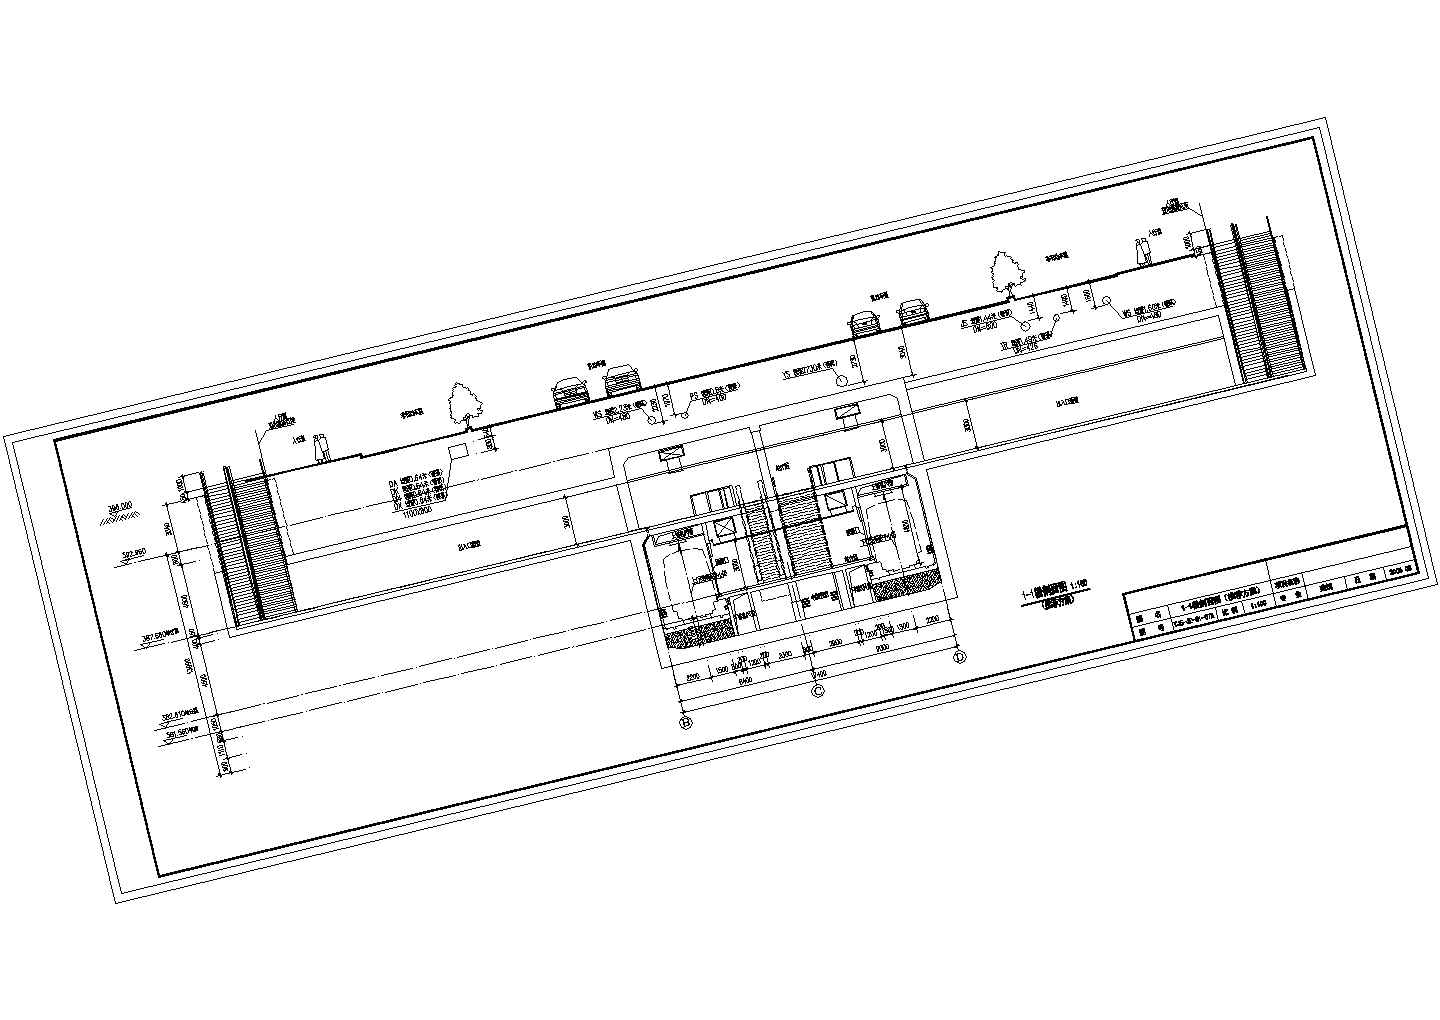 西安市轨道交通二号线一期工程某站总体设计图